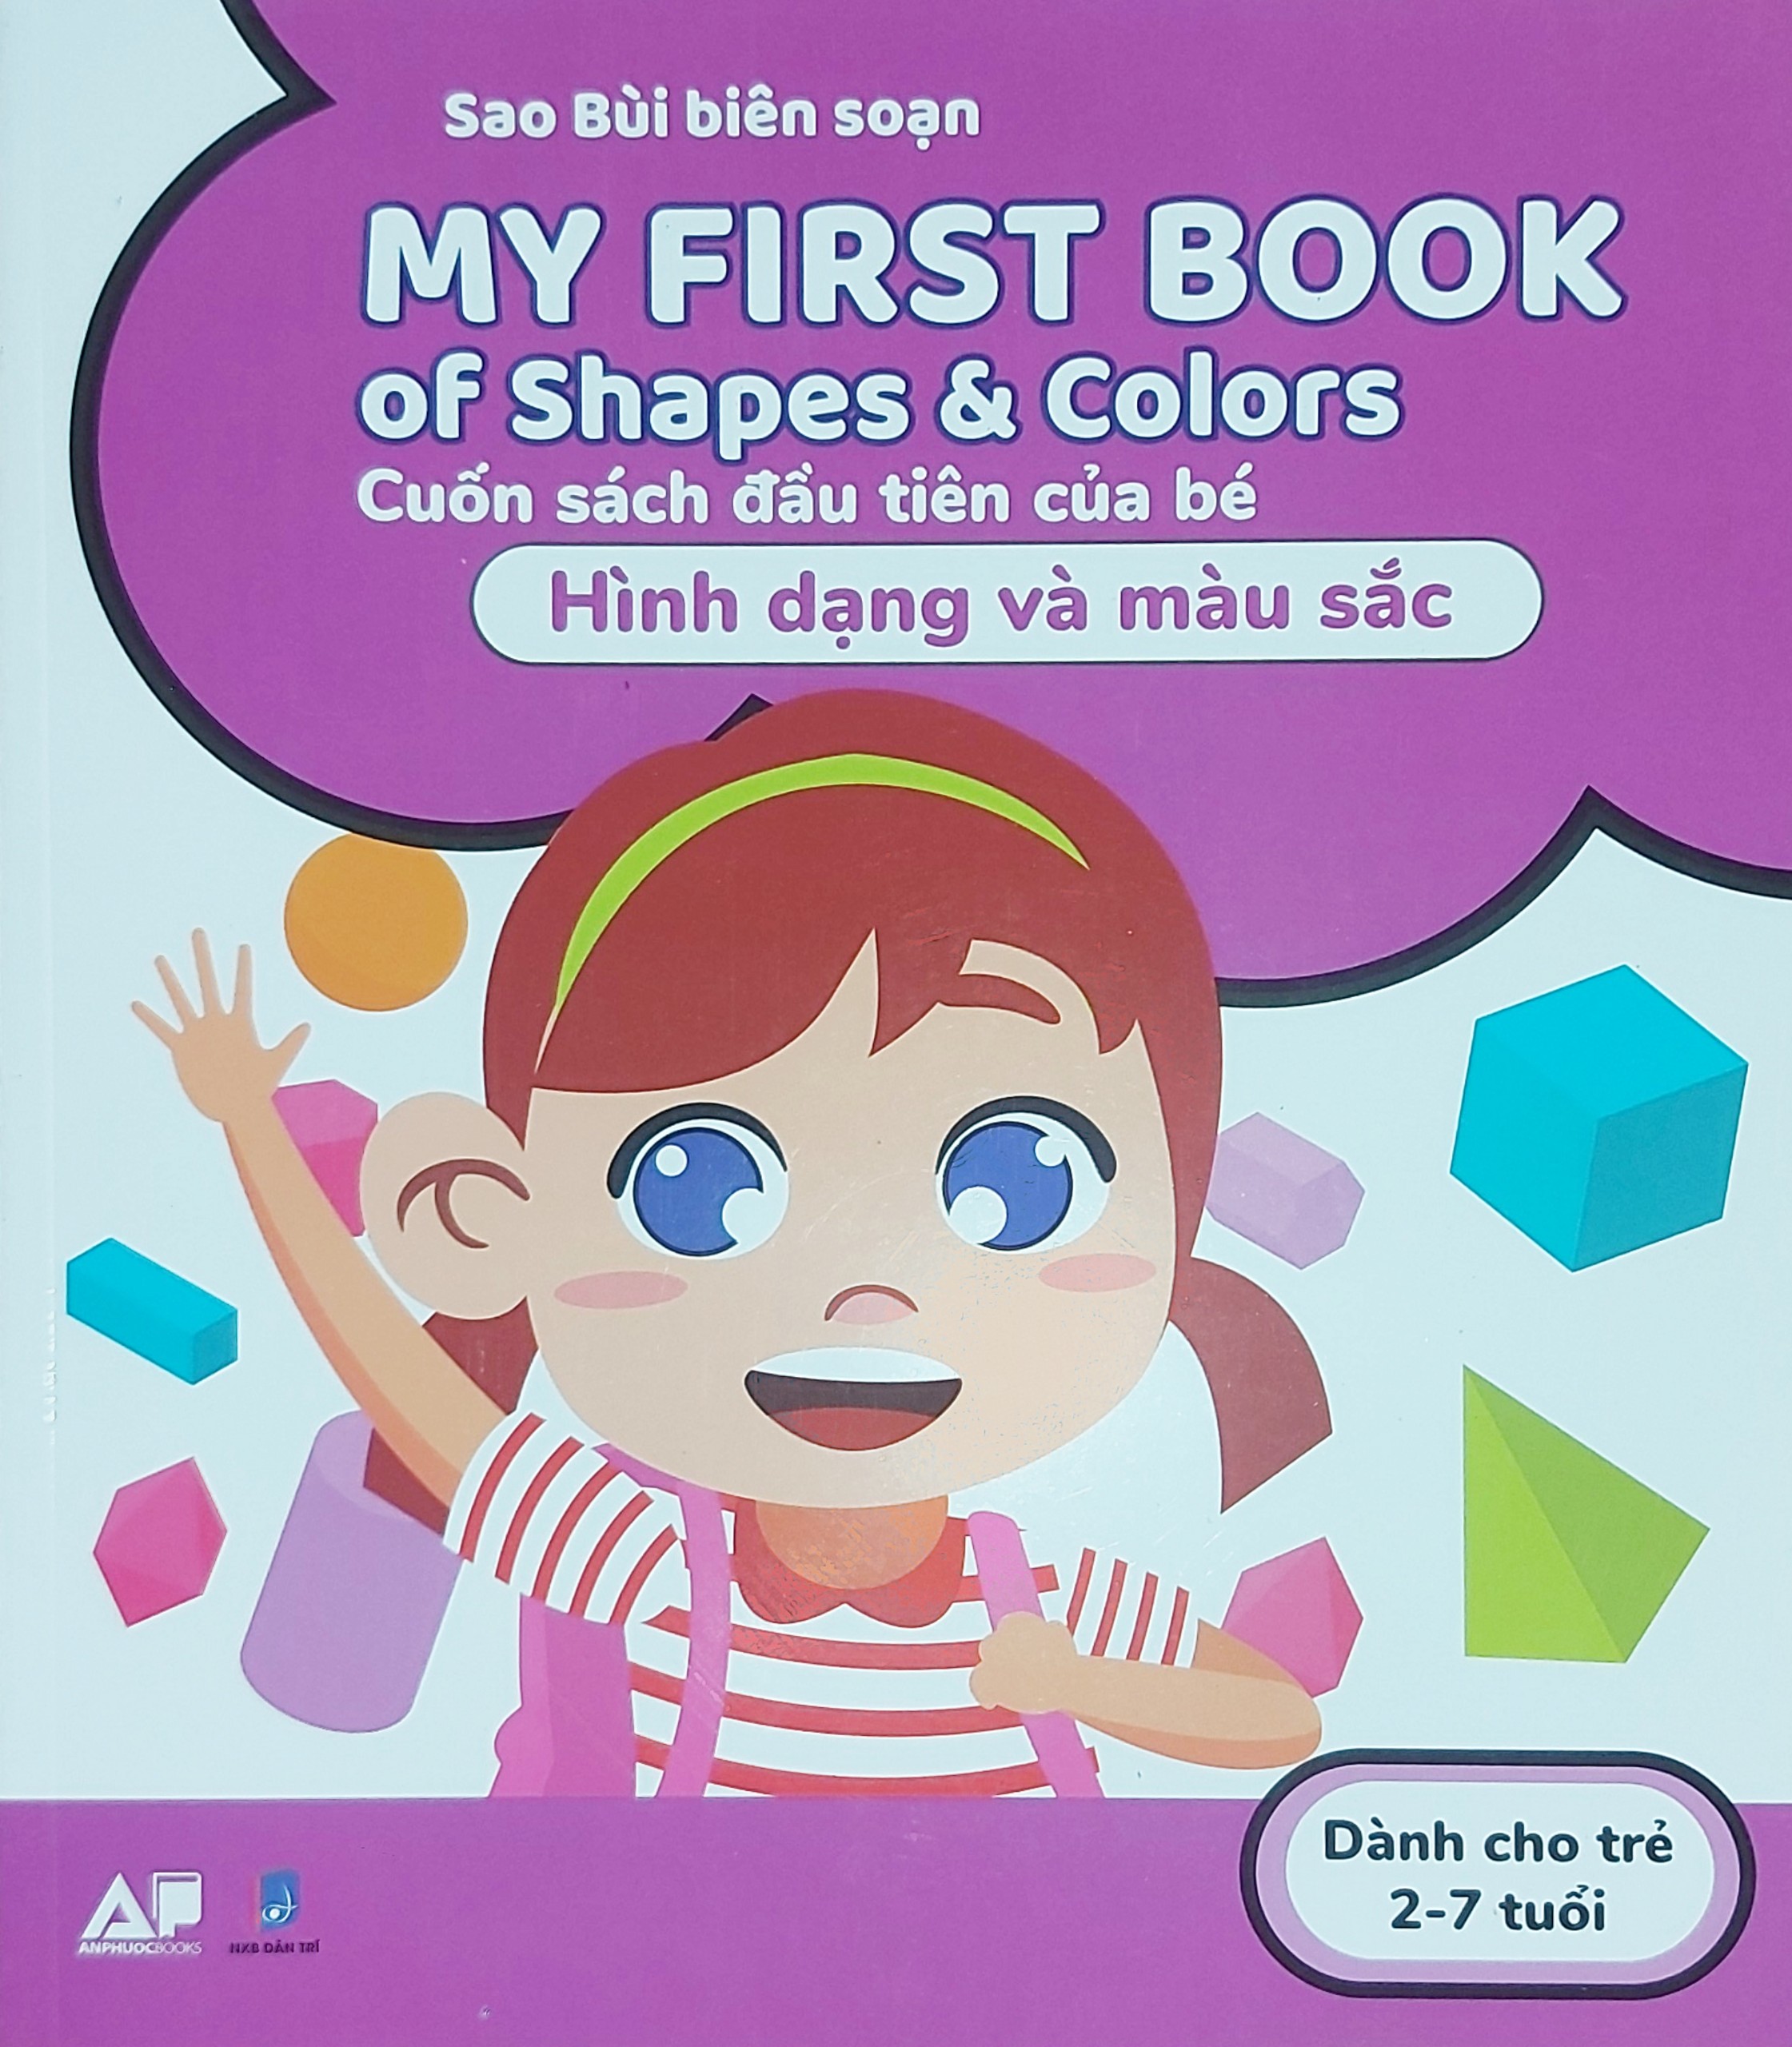 My first books of number - Cuốn sách đầu tiên của bé - Hình dạng và màu sắc